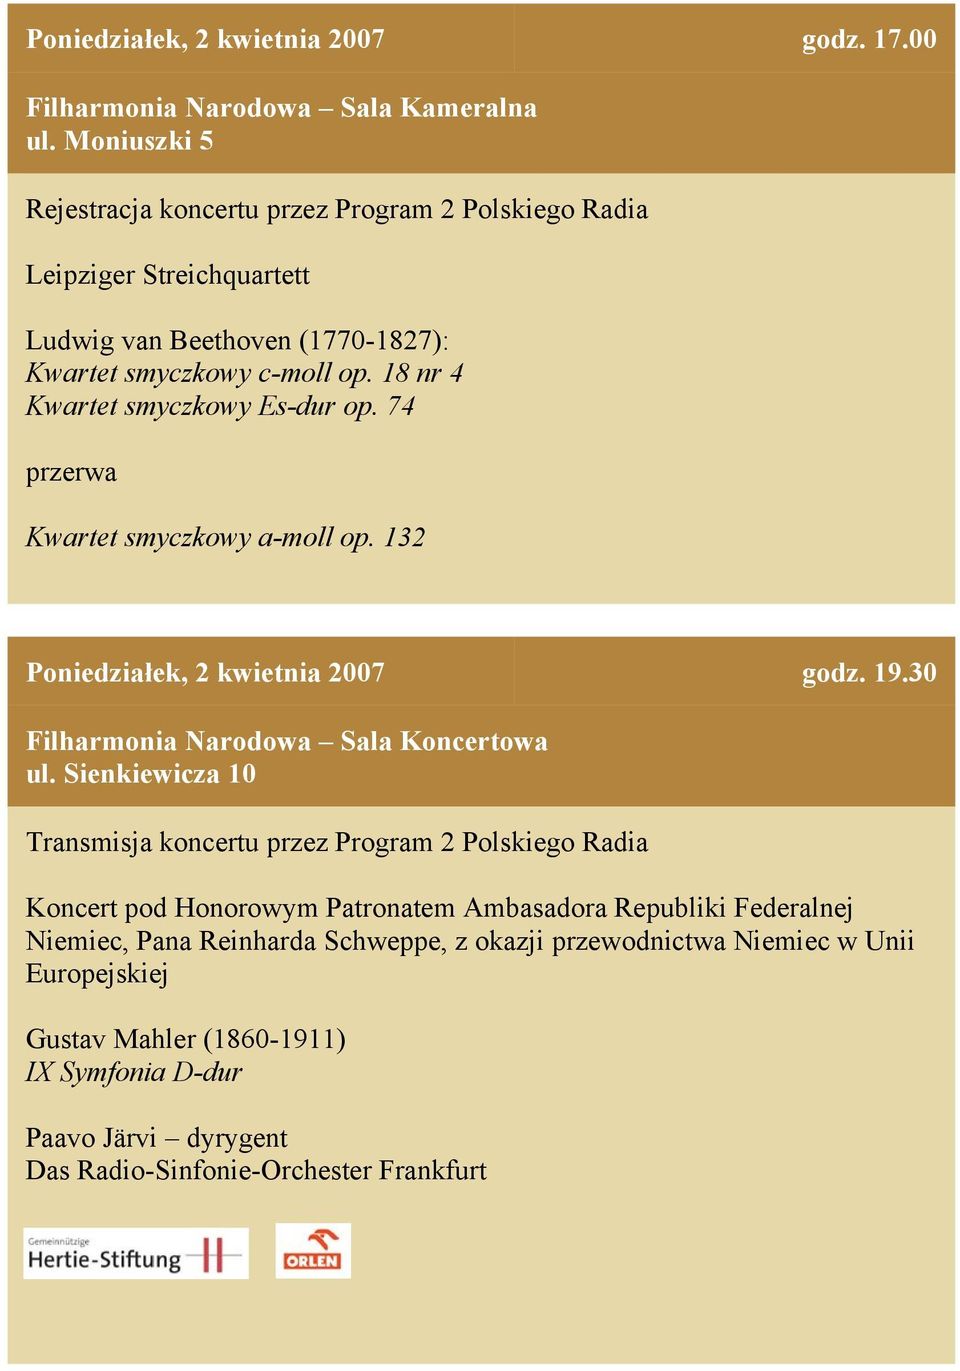 30 Filharmonia Narodowa Sala Koncertowa Transmisja koncertu przez Program 2 Polskiego Radia Koncert pod Honorowym Patronatem Ambasadora Republiki